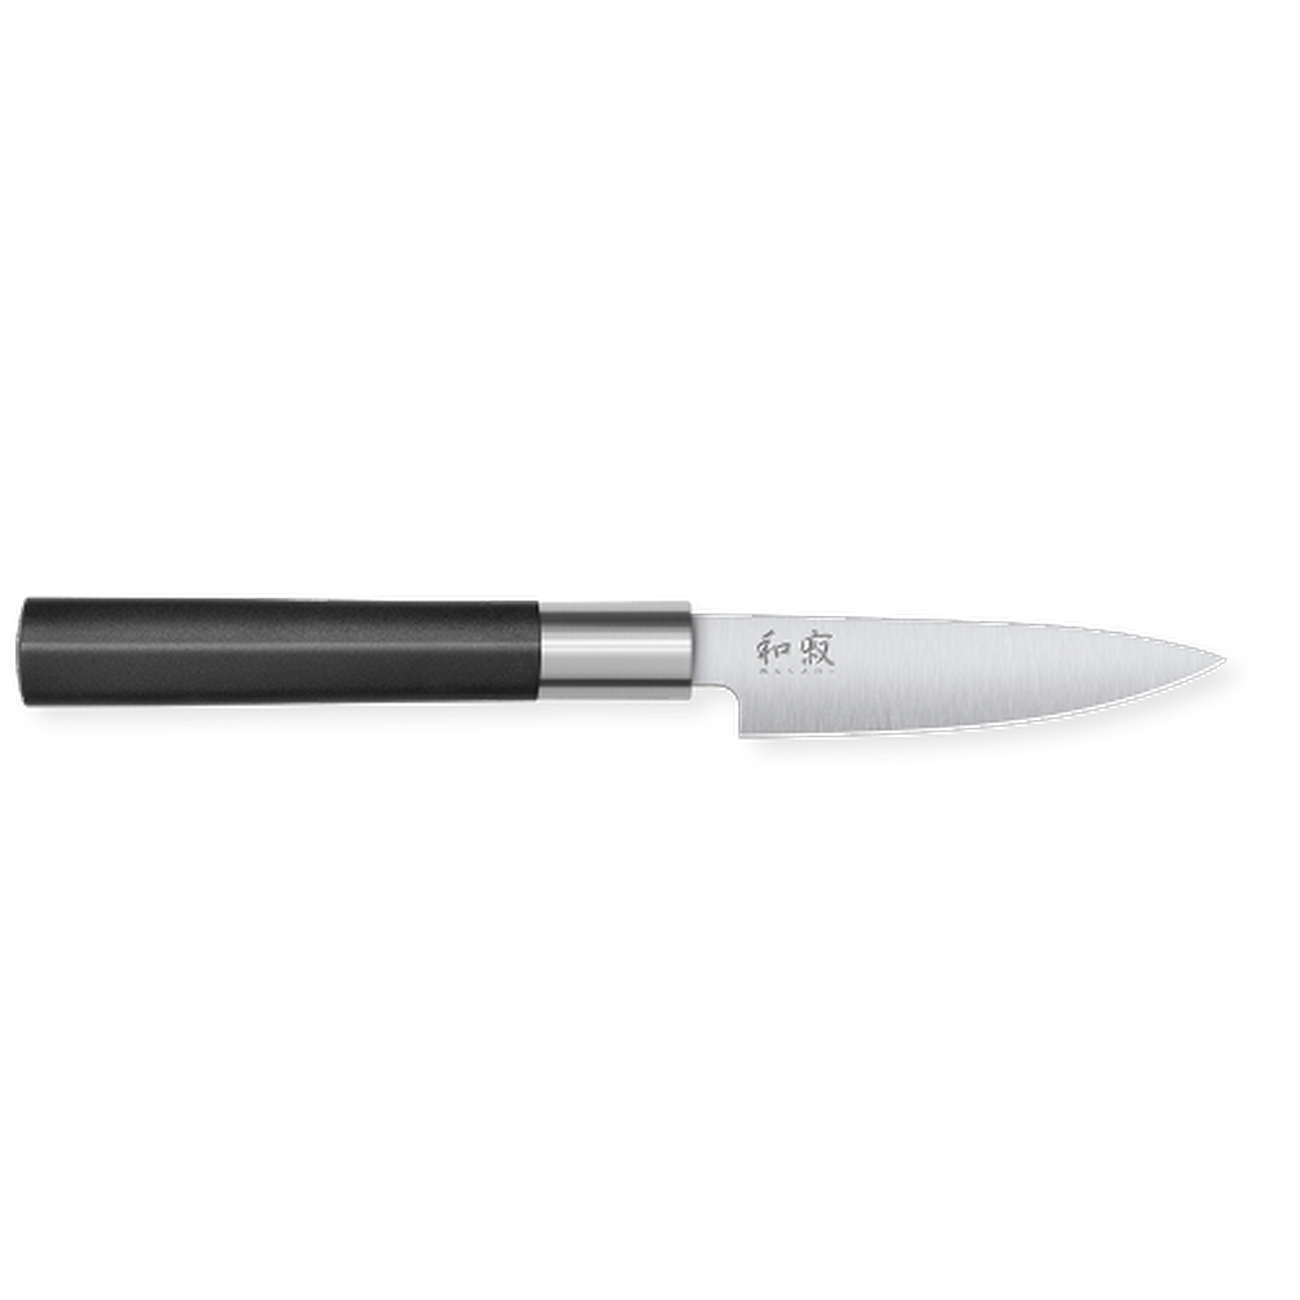 kai-wasabi-utility-paring-knife-4in-10cm - Kai Wasabi Paring Knife 4- 10cm